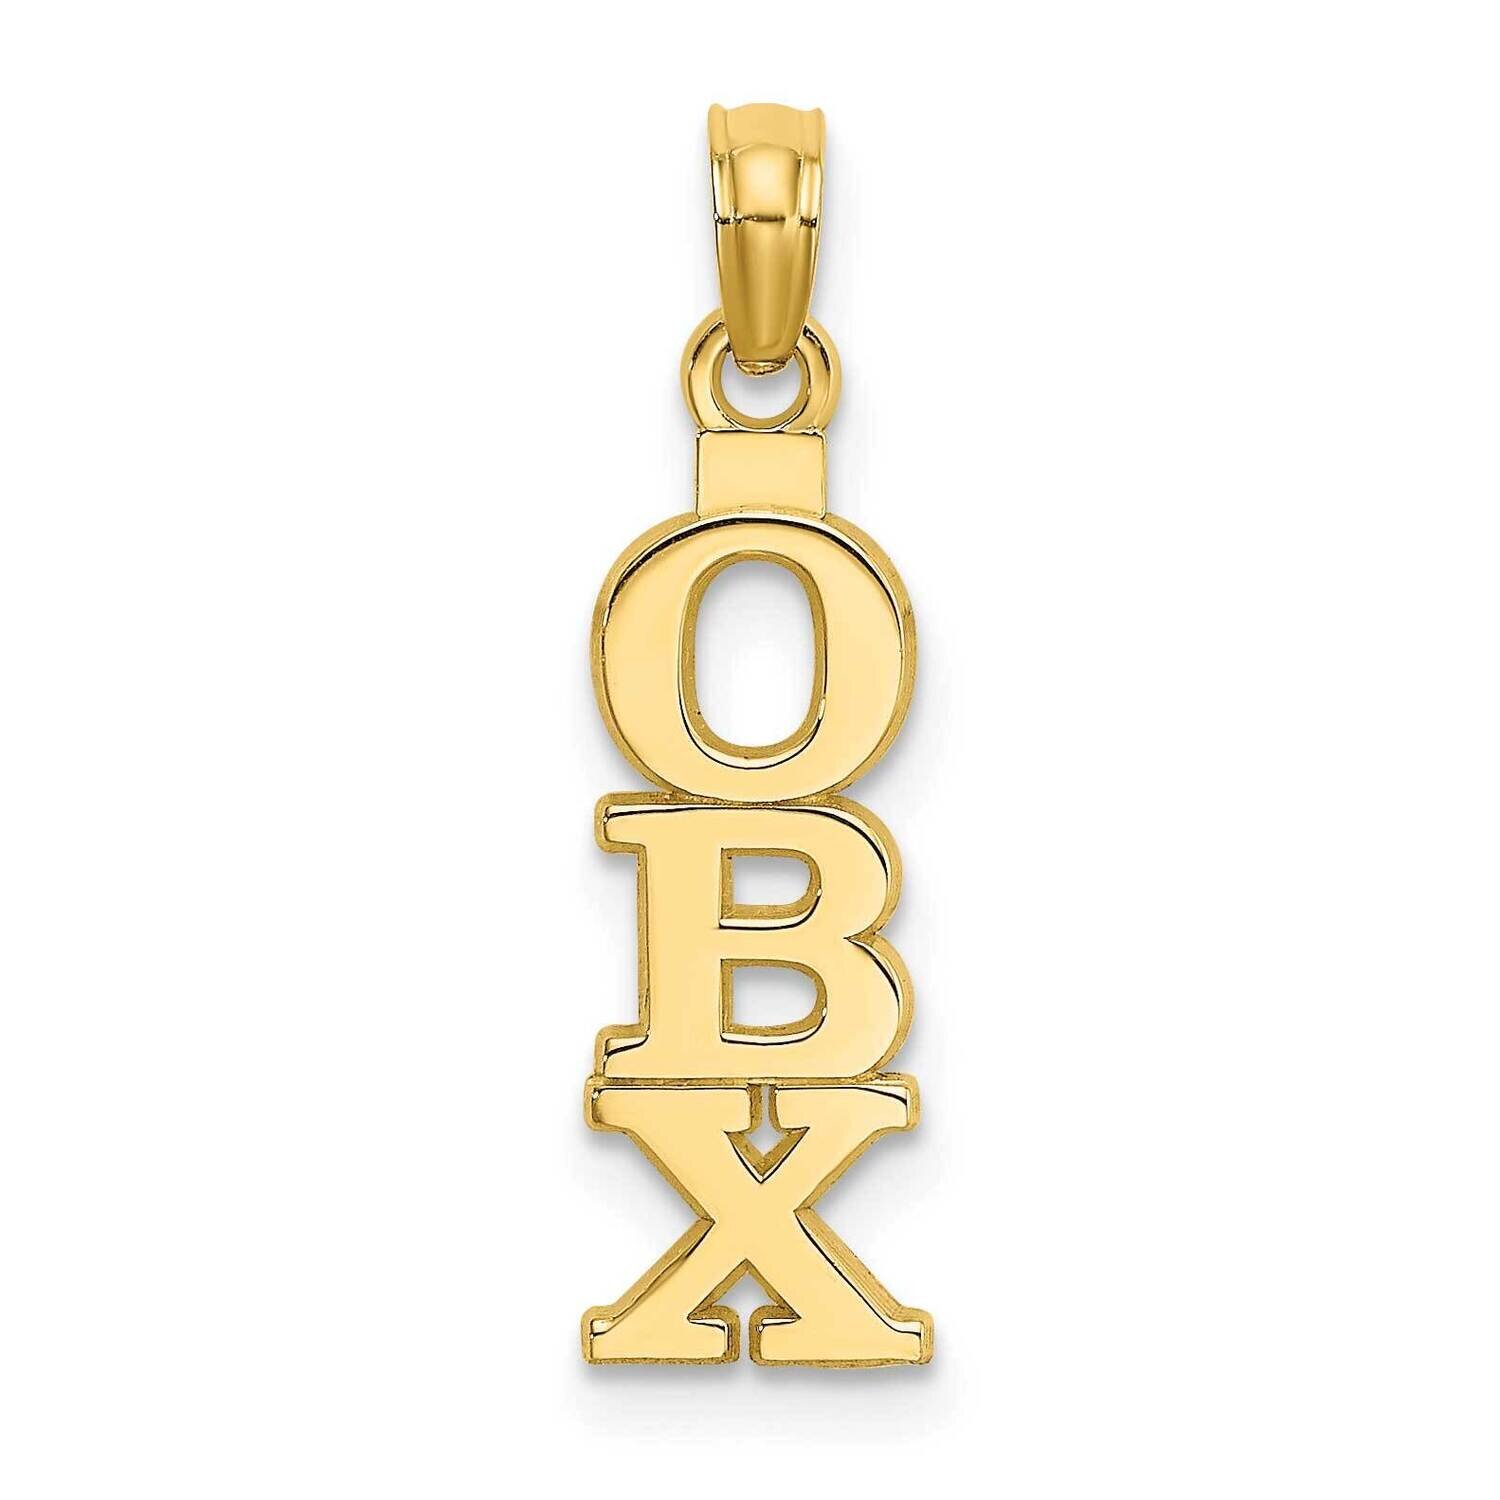 Obx Vertical Outer Banks Charm 14k Gold Polished K8651